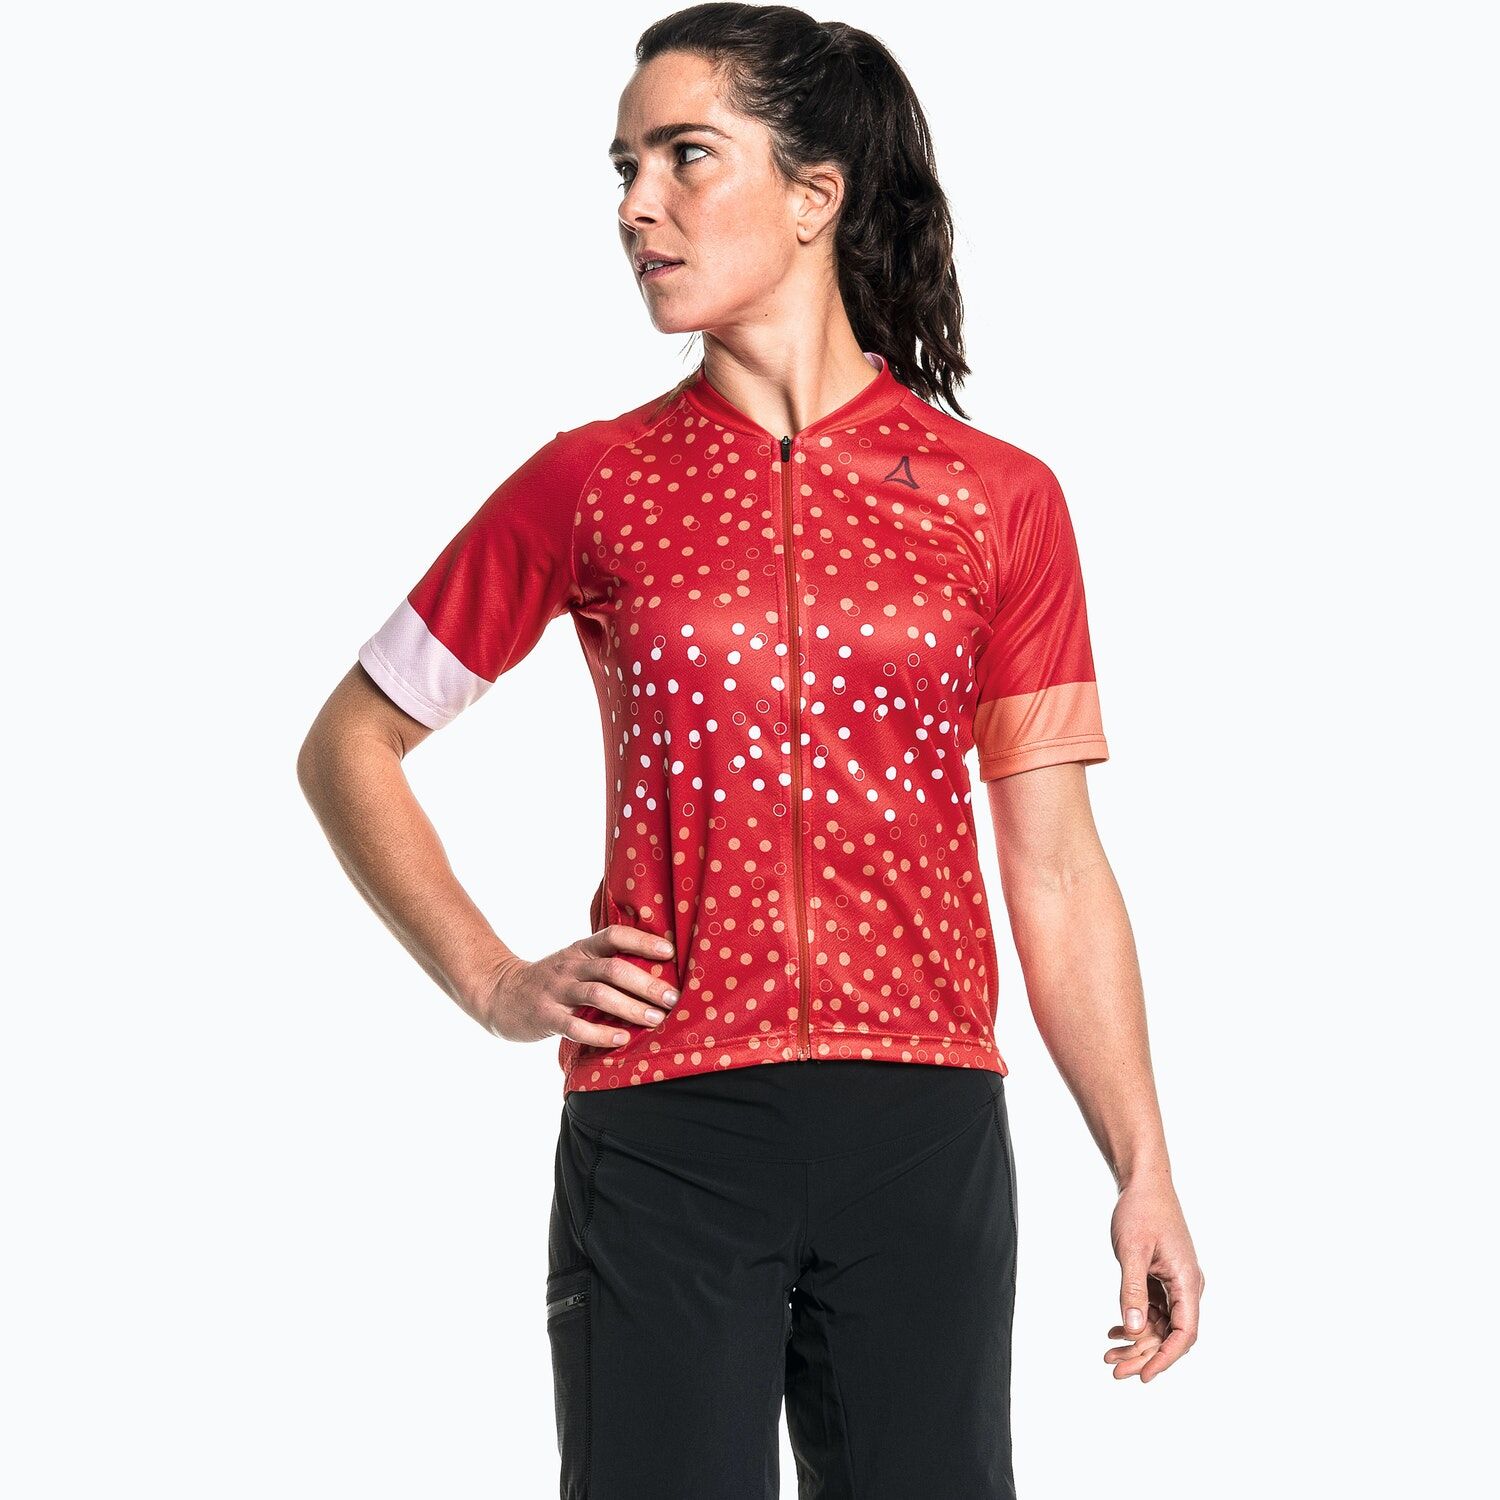 Schöffel Shirt Vertine - Cycling jersey - Women's